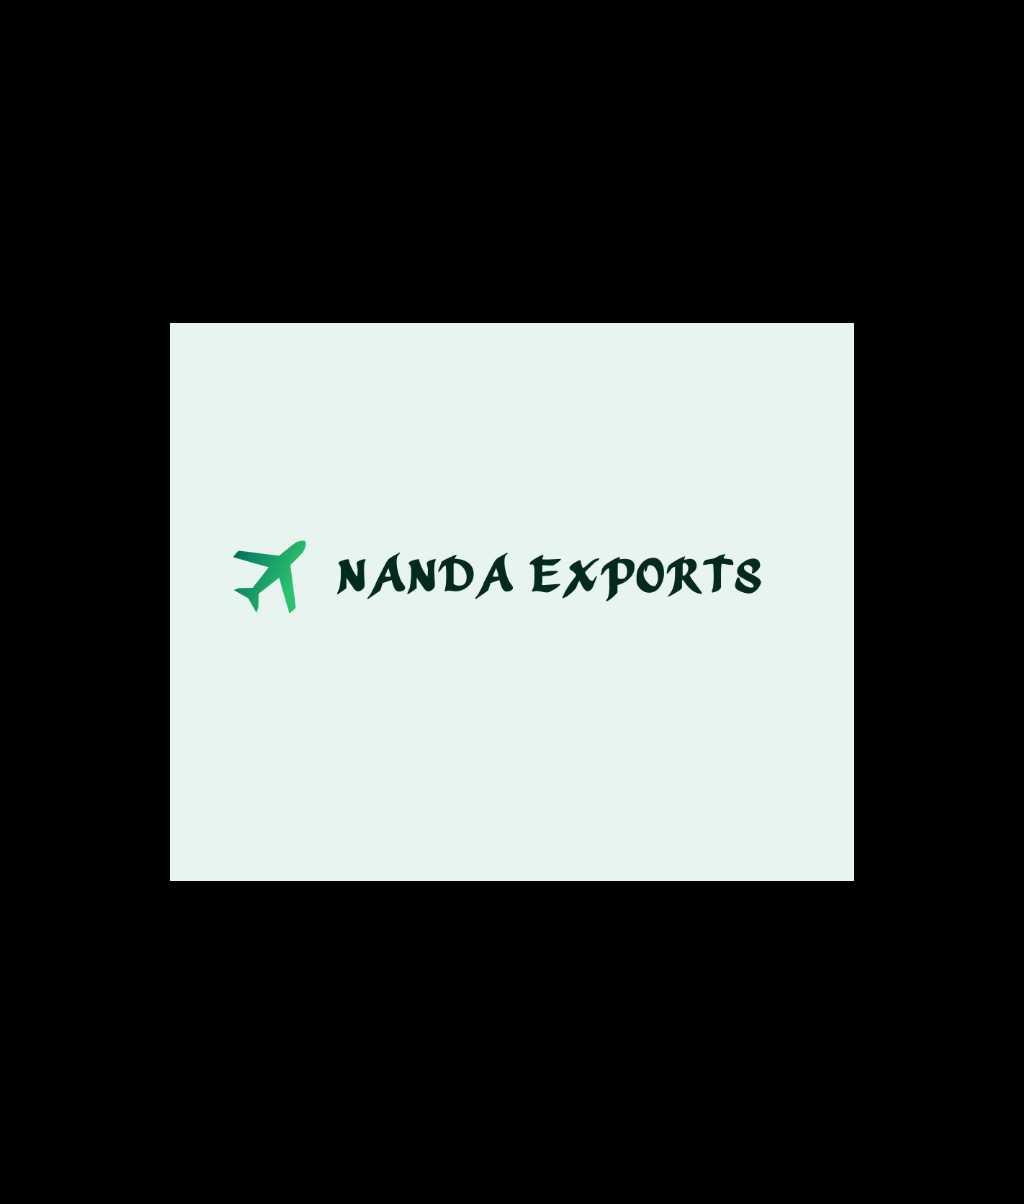 NANDA EXPORTS